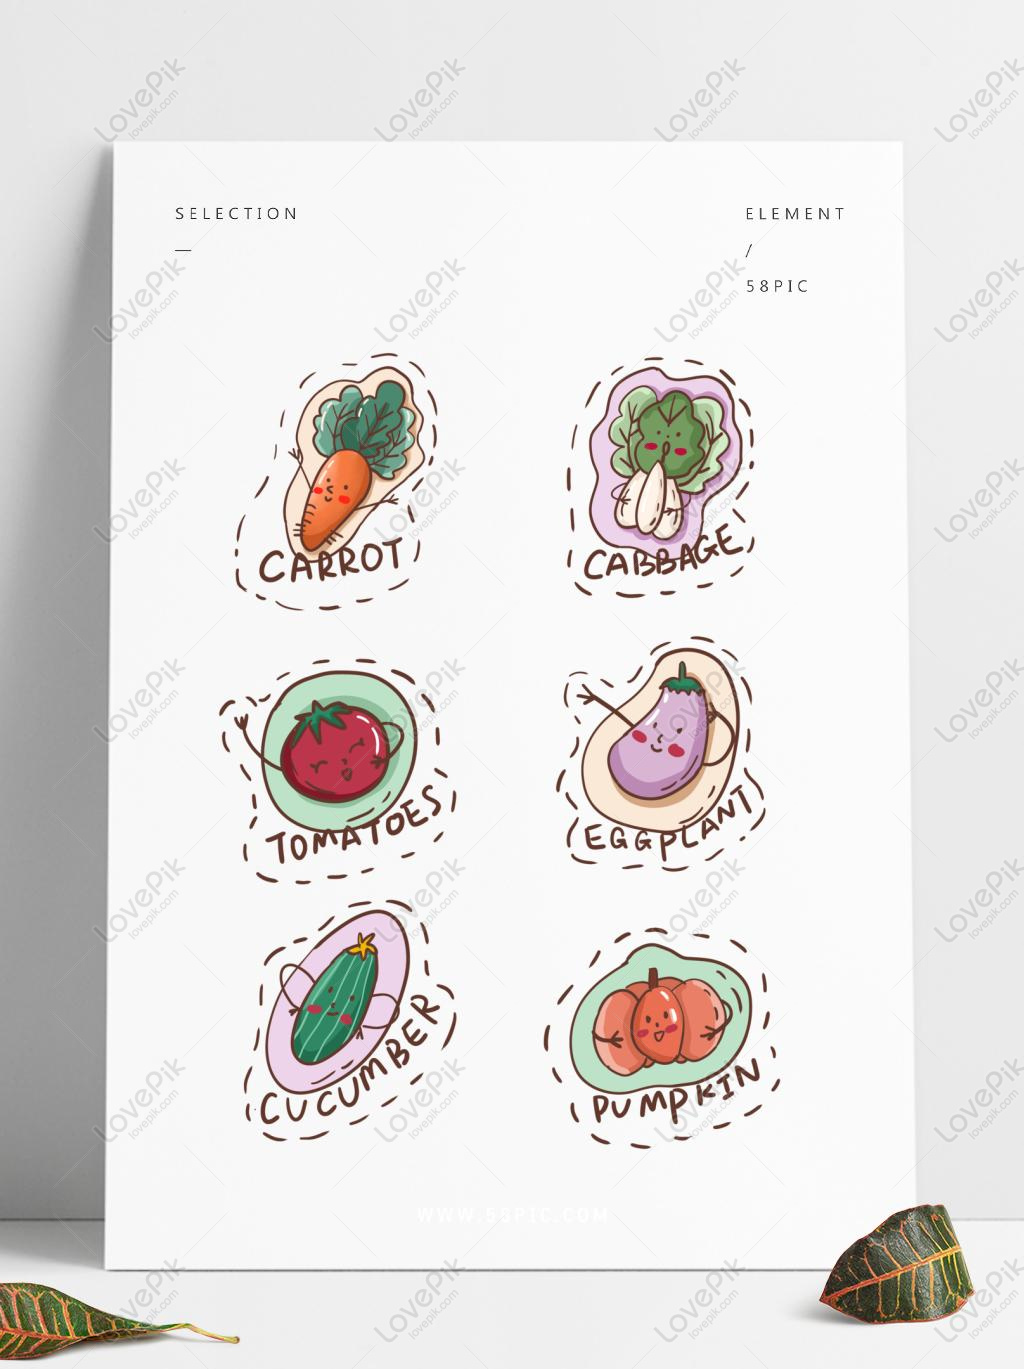 Vegetable Fruit Food Cartoon Cute Sticker: Bạn yêu thích những hình vẽ gắn liền với ẩm thực và đồ ăn? Hãy thử xem bức ảnh này! Những hình ảnh rau củ quả đáng yêu được thể hiện bằng phong cách hoạt hình sẽ khiến bạn thích thú và cảm thấy được yêu thương.